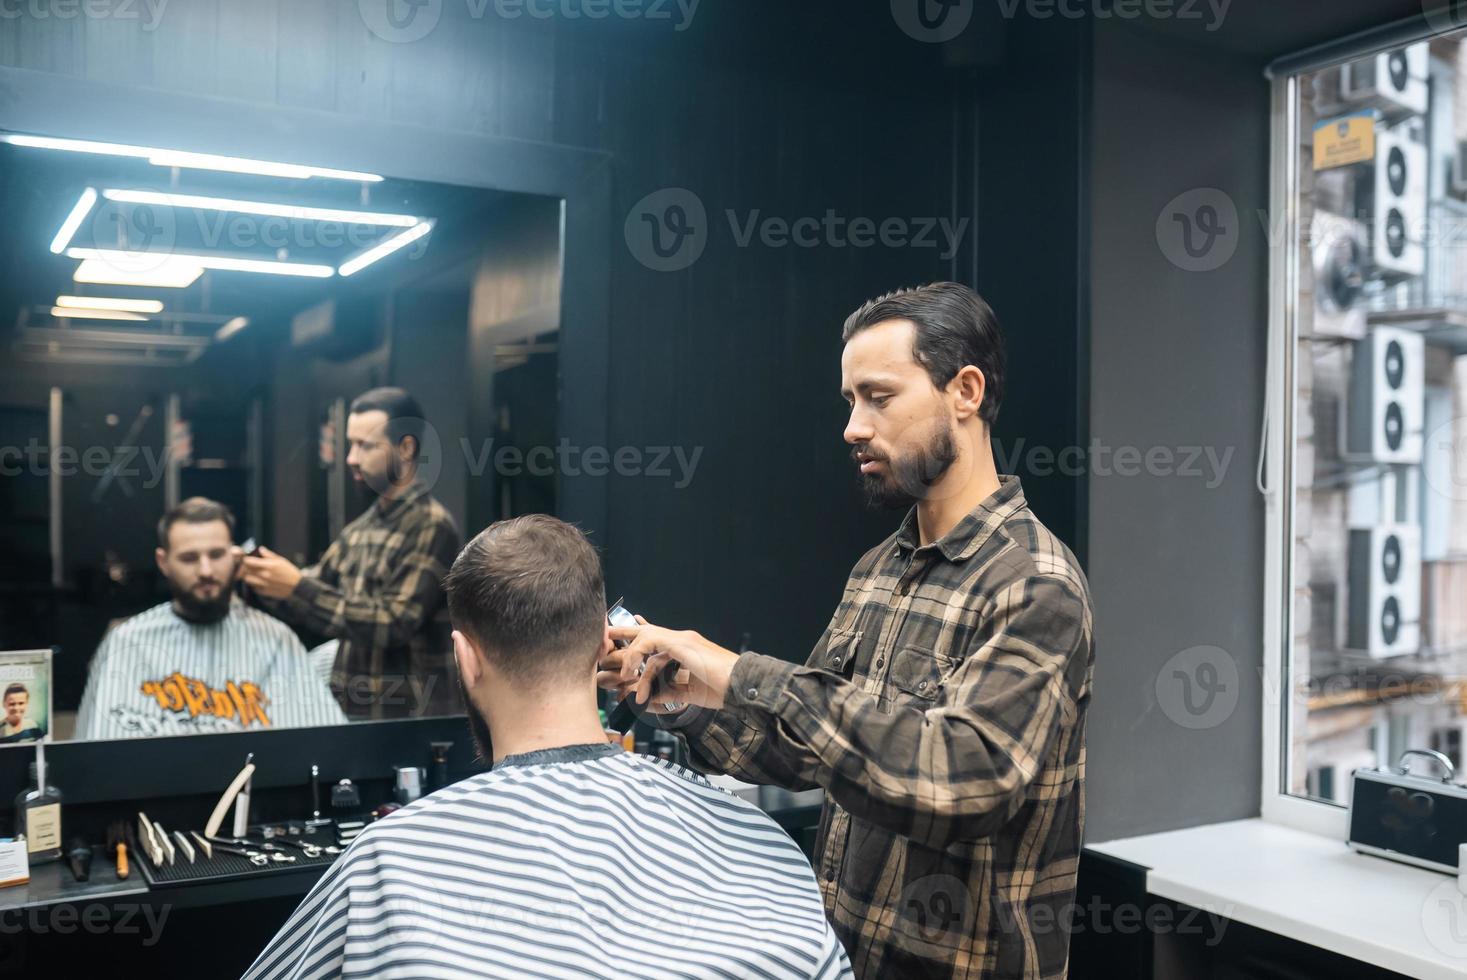 maestro en barbería hace corte de pelo de hombres con cortapelos foto